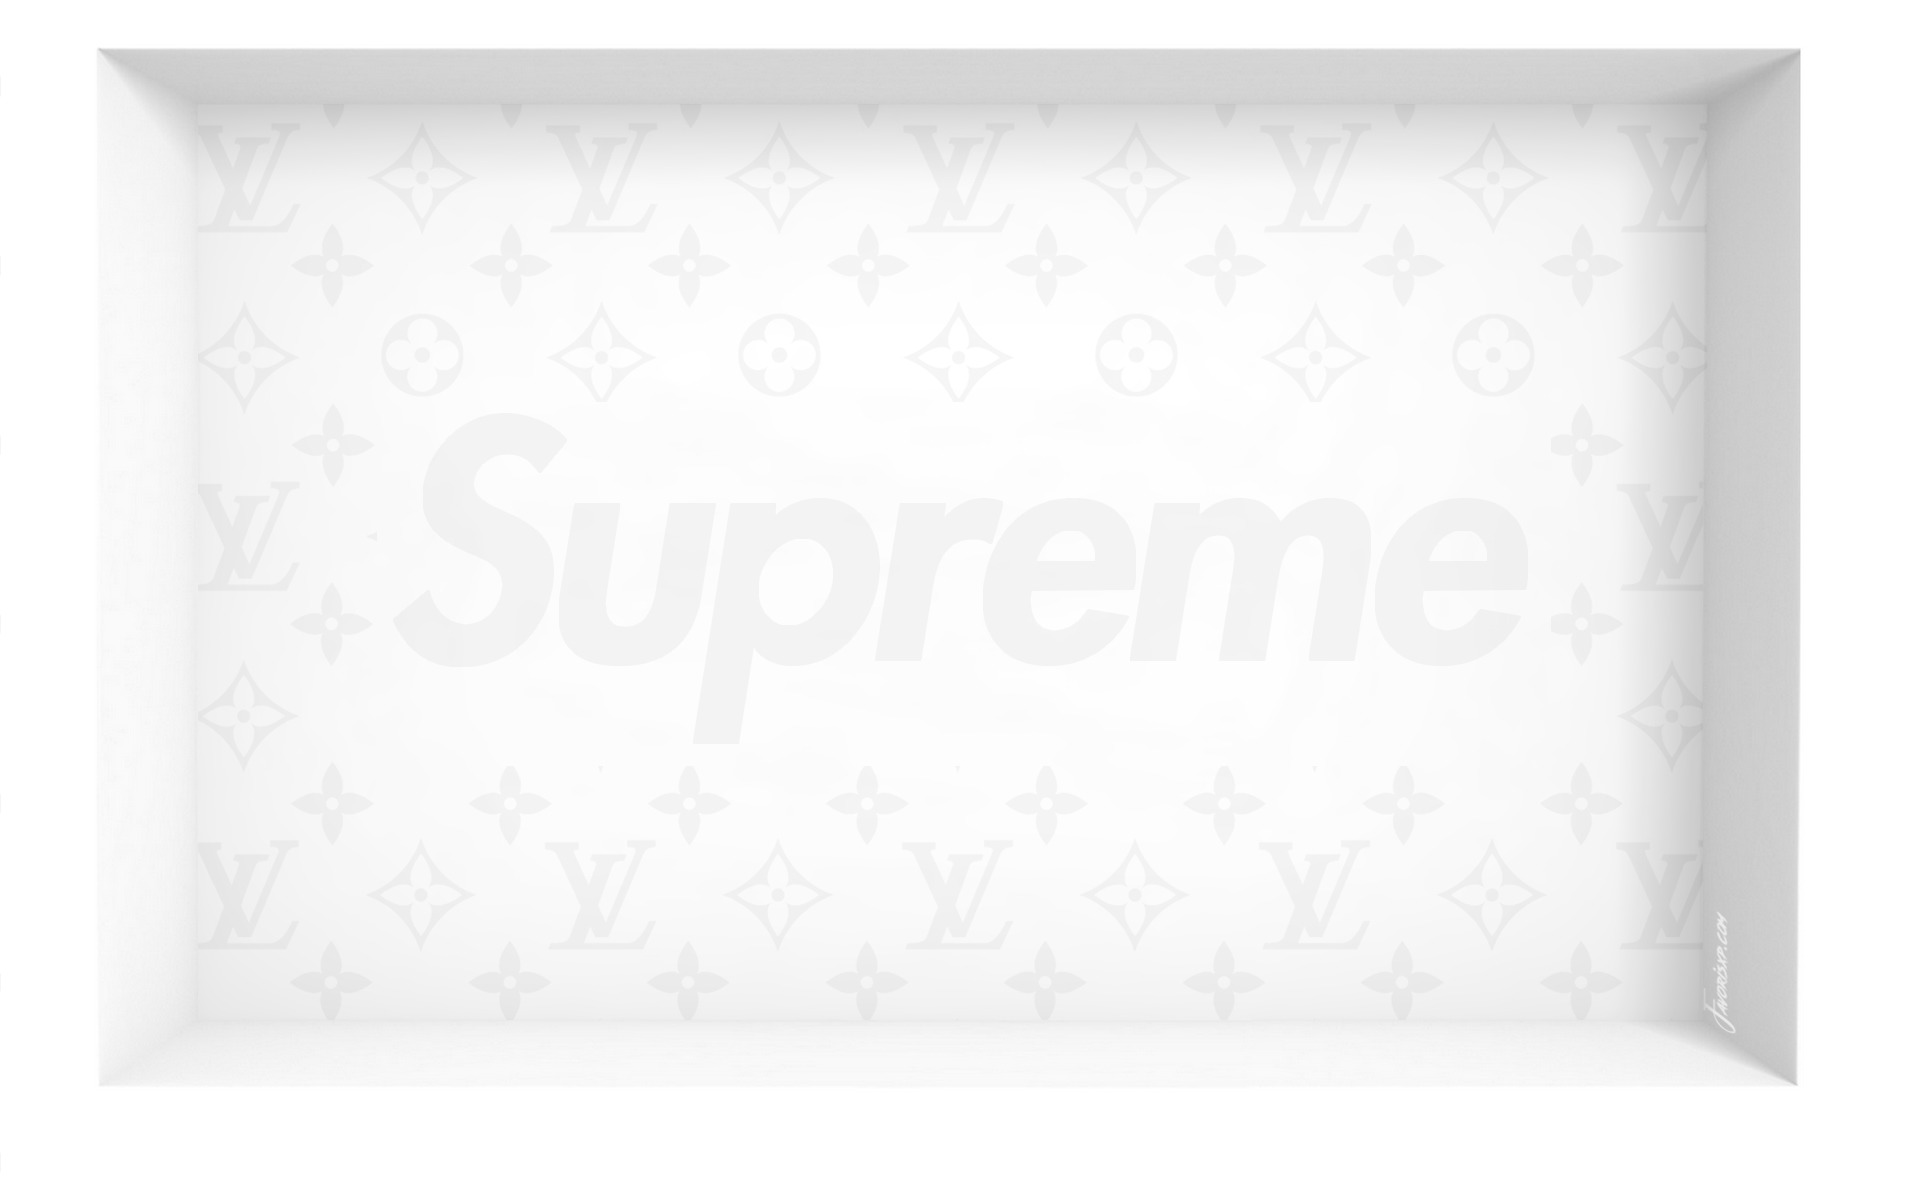 Supreme Fonds d'écran - Image arrière-plan - Wallpaper Favorisxp pour PC et  Smartphone